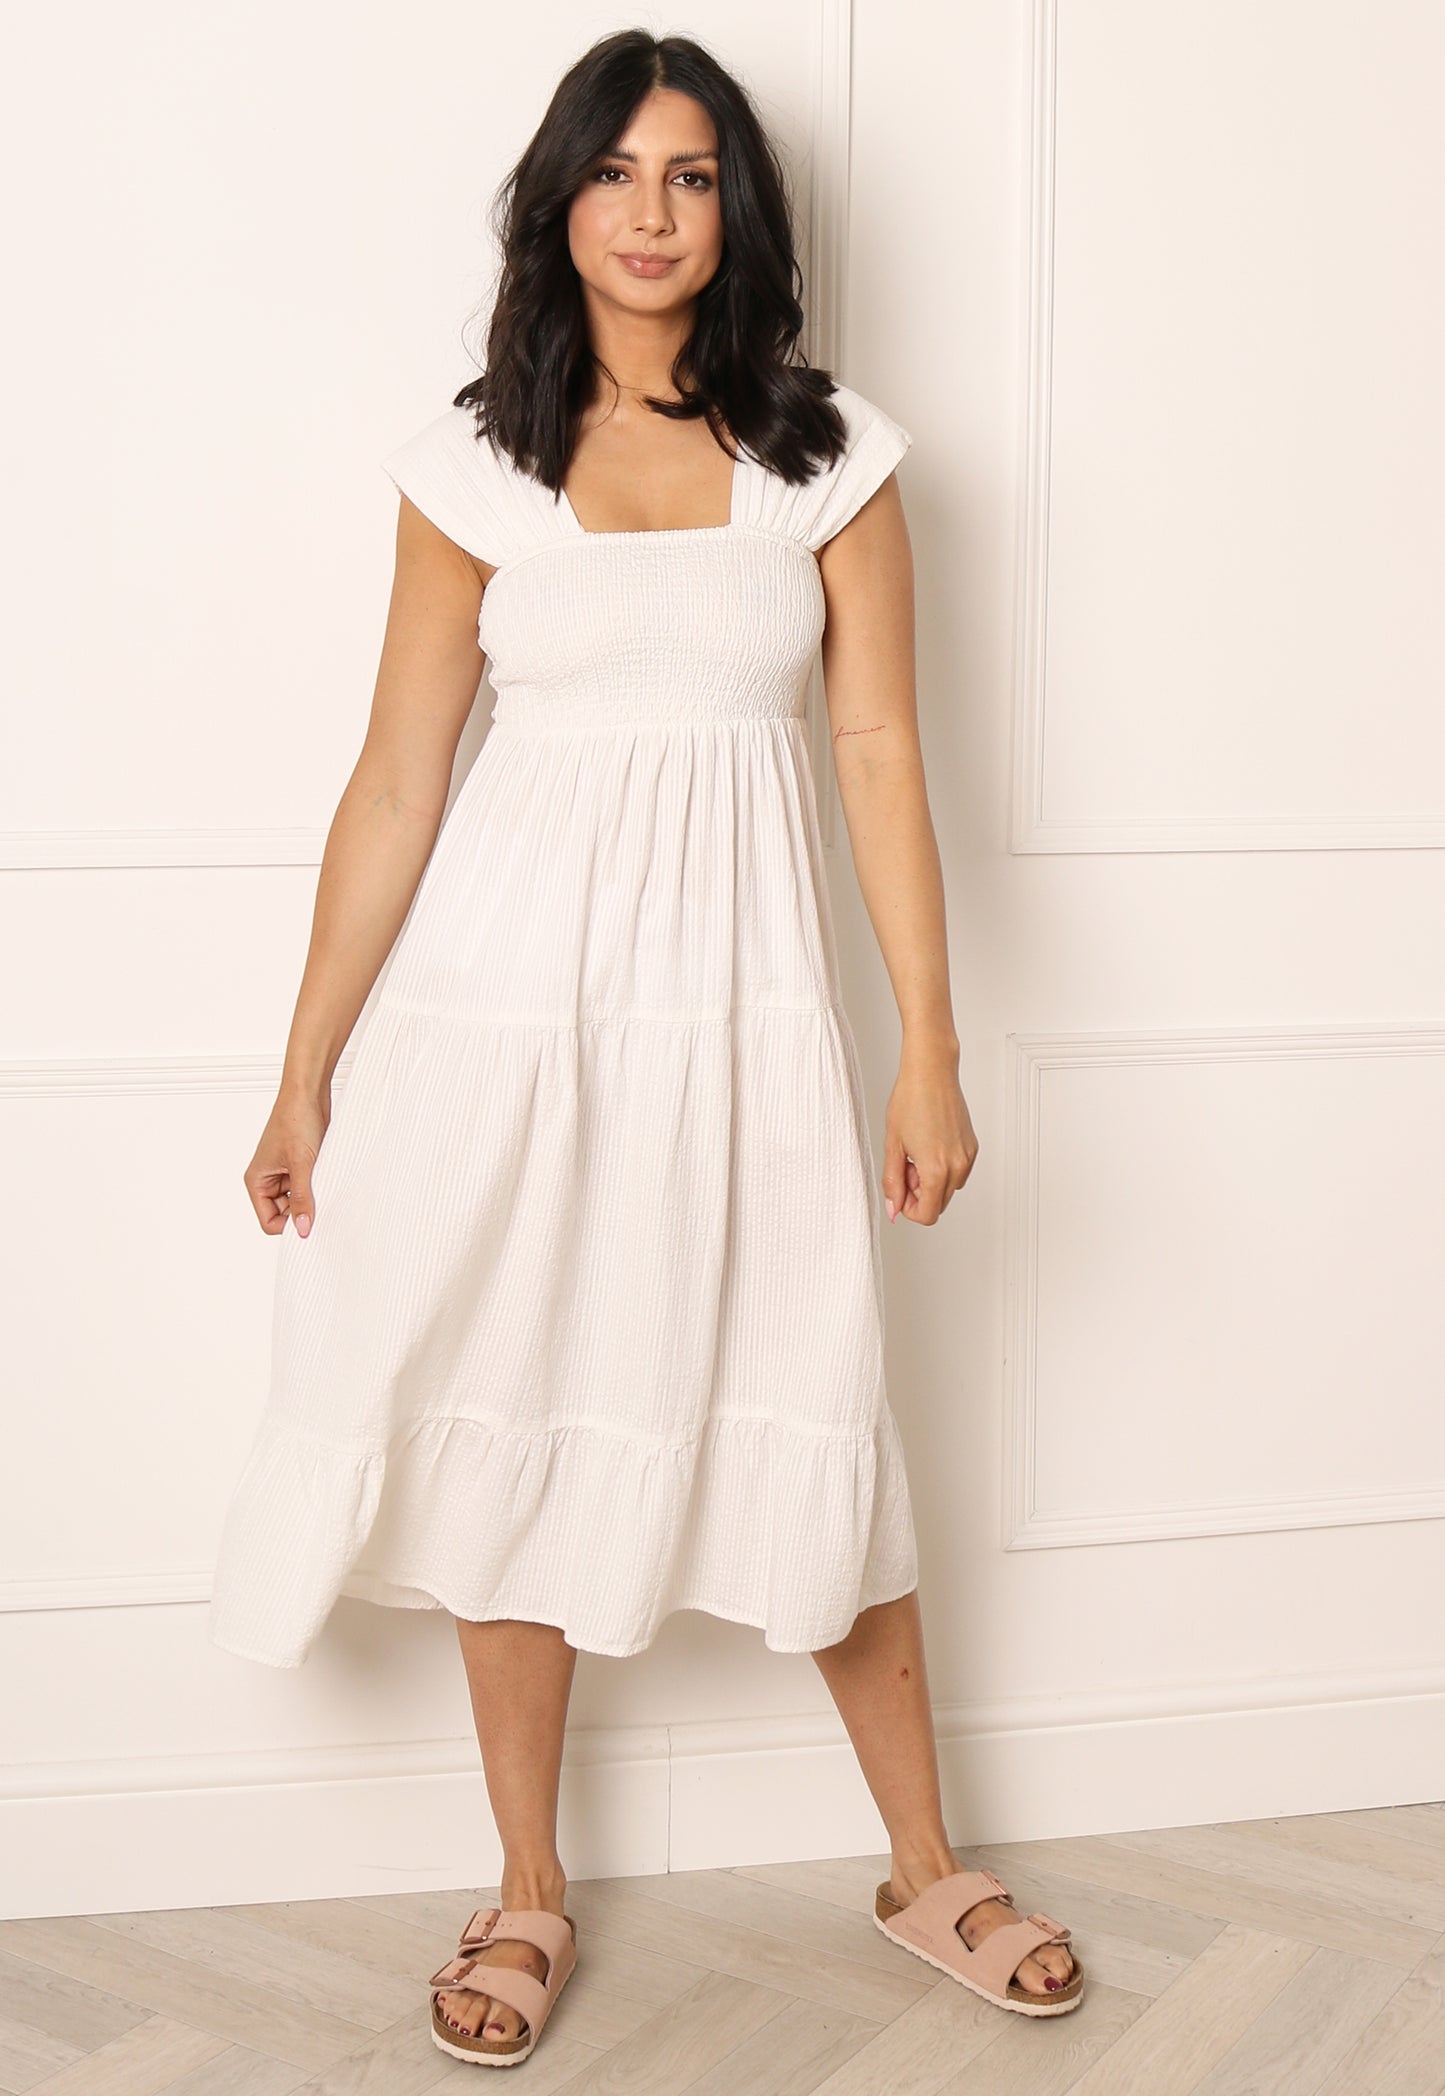 VERO MODA Toni Wide Strap Tiered Cotton Midi Sun Dress in White - One Nation Clothing